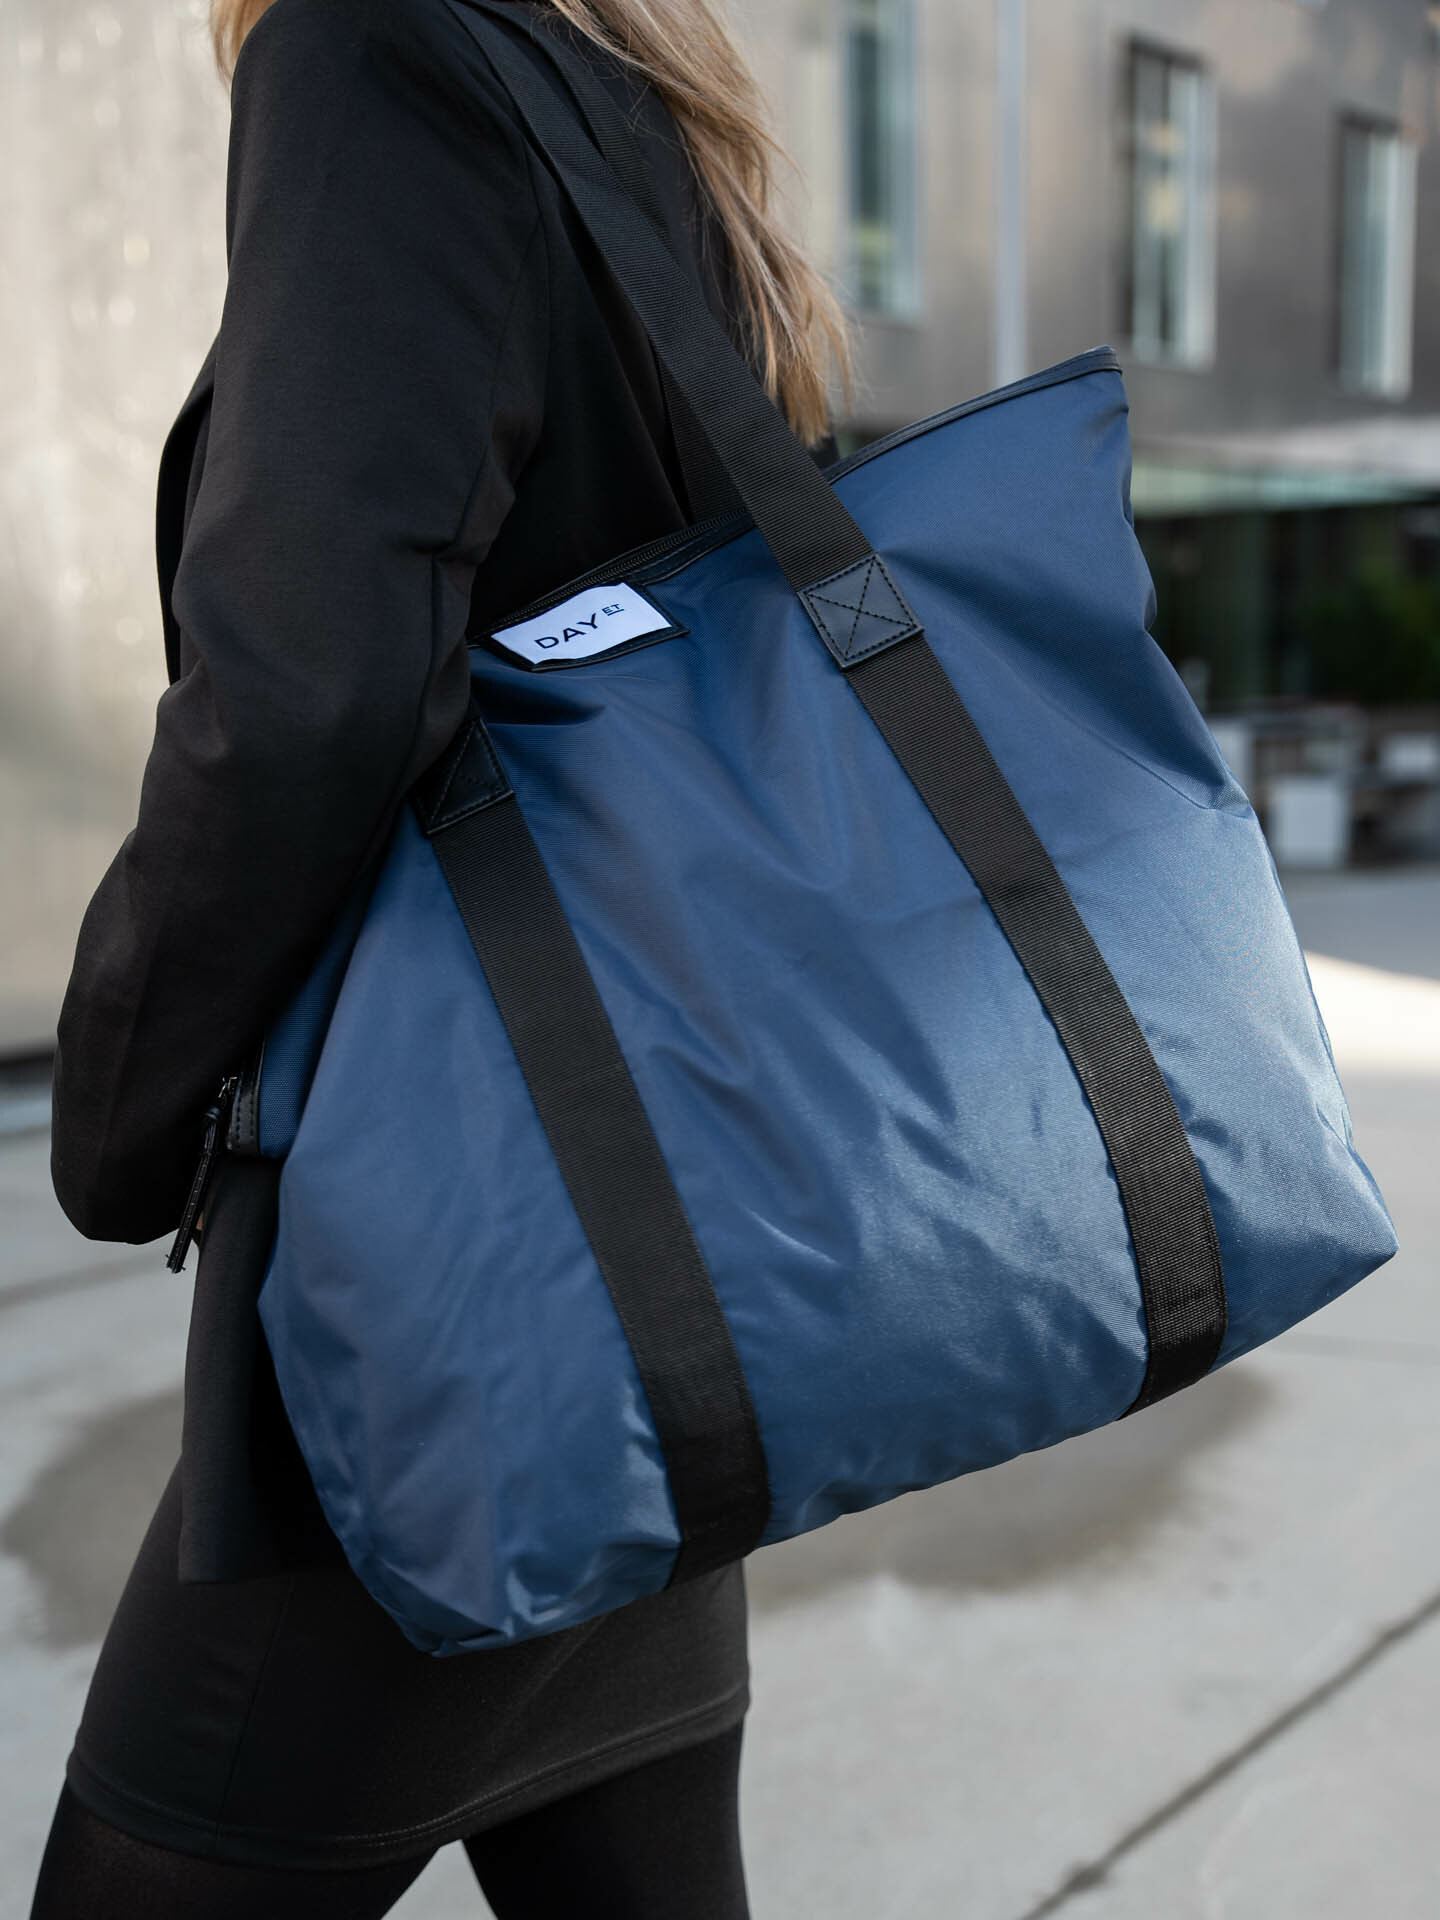 Leather Backpacks for Men & Women | Uppercase